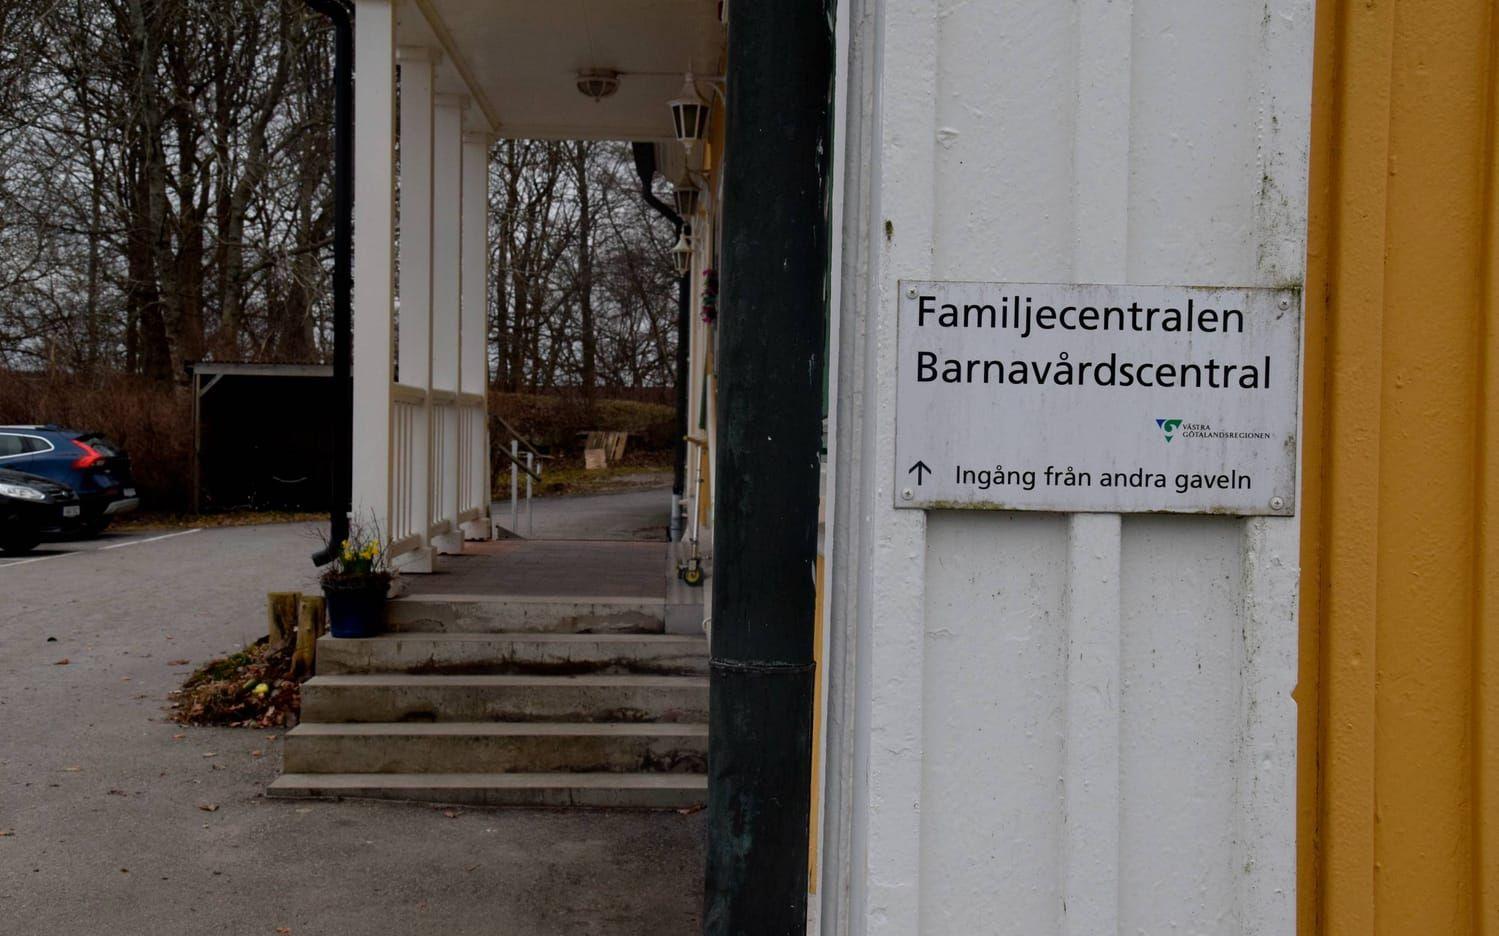 På familjecentralen arbetar en specialpedagog, kurator, förskolelärare, psykolog, barnmorska och sjuksköterska. Foto: Malin Rindvik